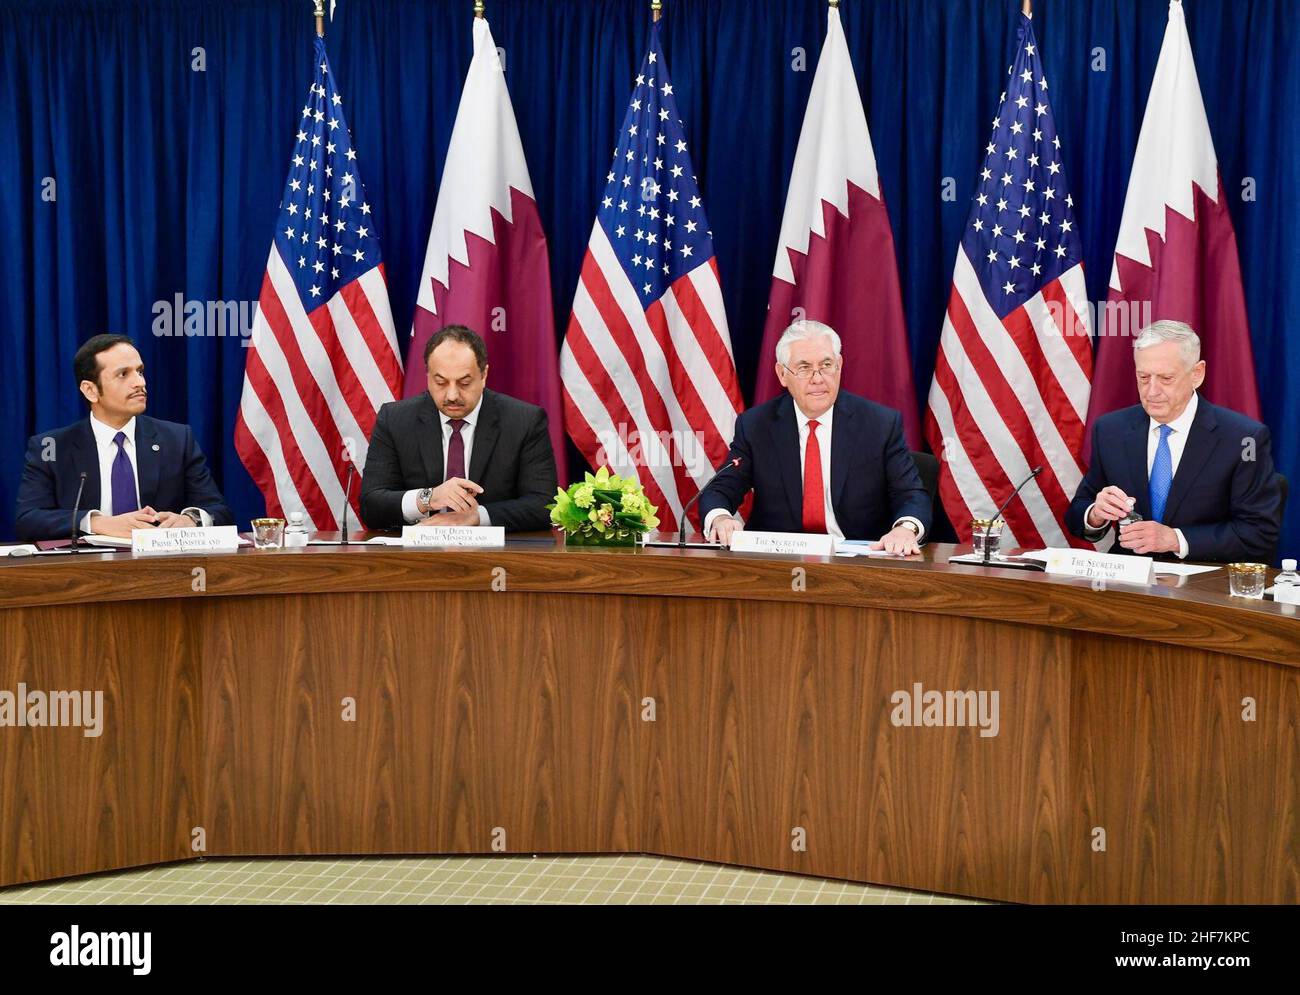 Sekretär Tillerson und Sekretär Mattis veranstalten gemeinsam die hochrangige Eröffnungssitzung des ersten strategischen Dialogs zwischen den USA und Katar - 26115026718. Stockfoto